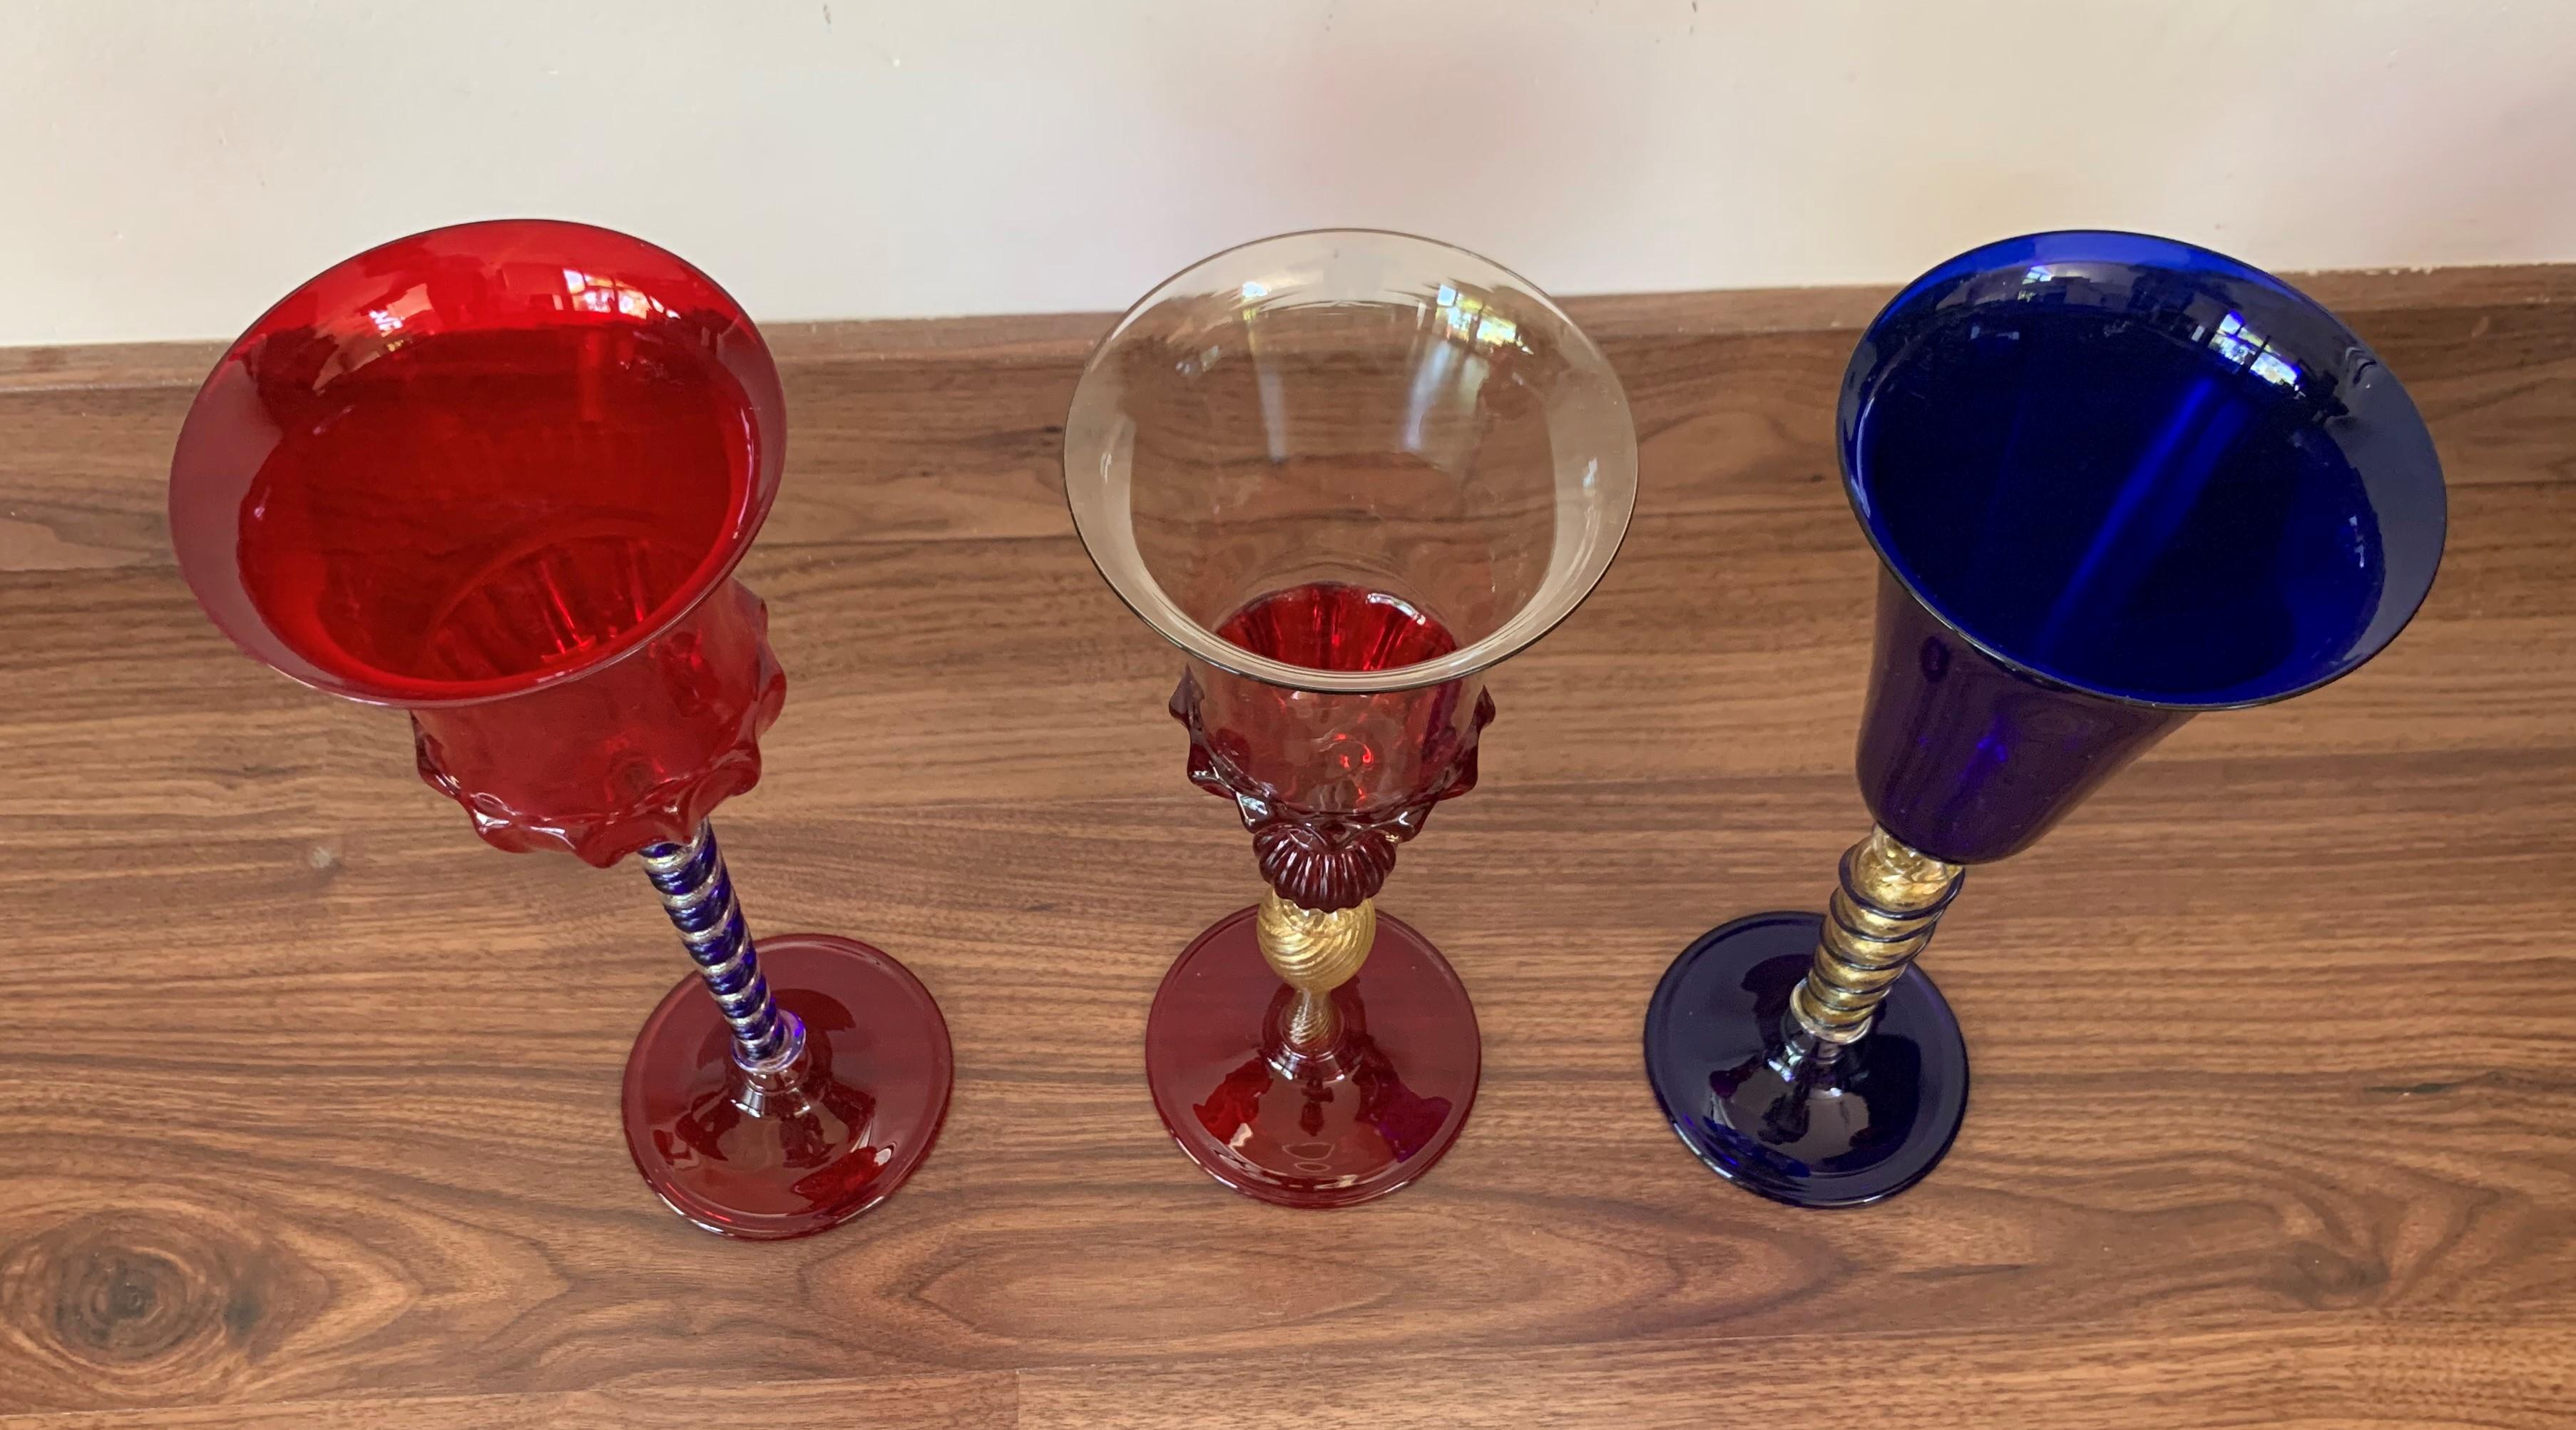 Set aus drei modernen Bechern aus Muranoglas, komplett handgefertigt und mundgeblasen.
Dieses auffällige Set besteht aus drei komplementären Bechern, einer in klarer, einer in roter und einer in blauer Farbe.
Die goldenen Stiele weisen ein